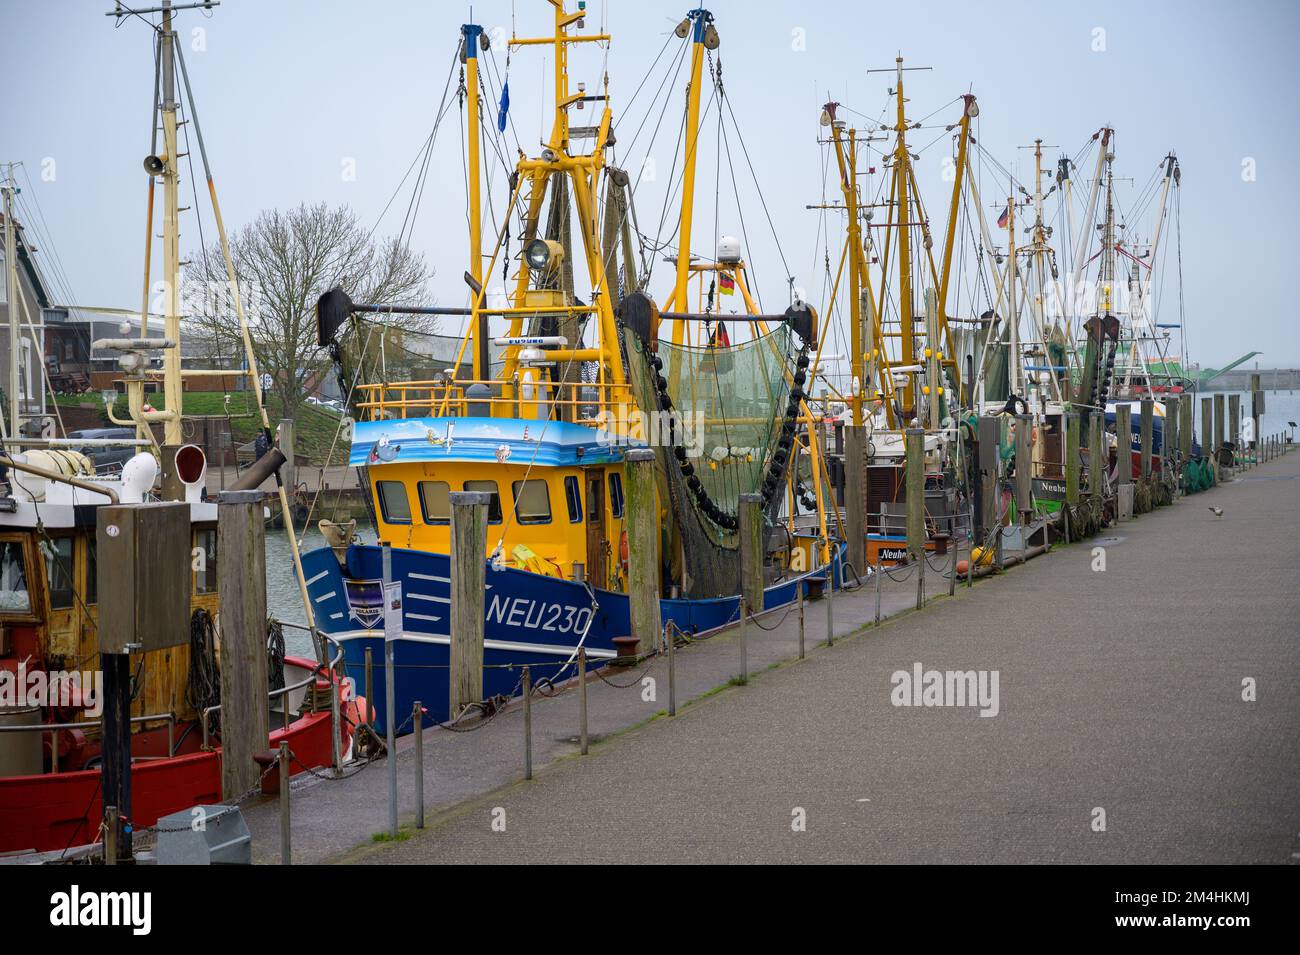 NEUHARLINGERSIEL, GERMANY - NOVEMBER 26, 2022: Shrimp cutters moored in harbor Stock Photo